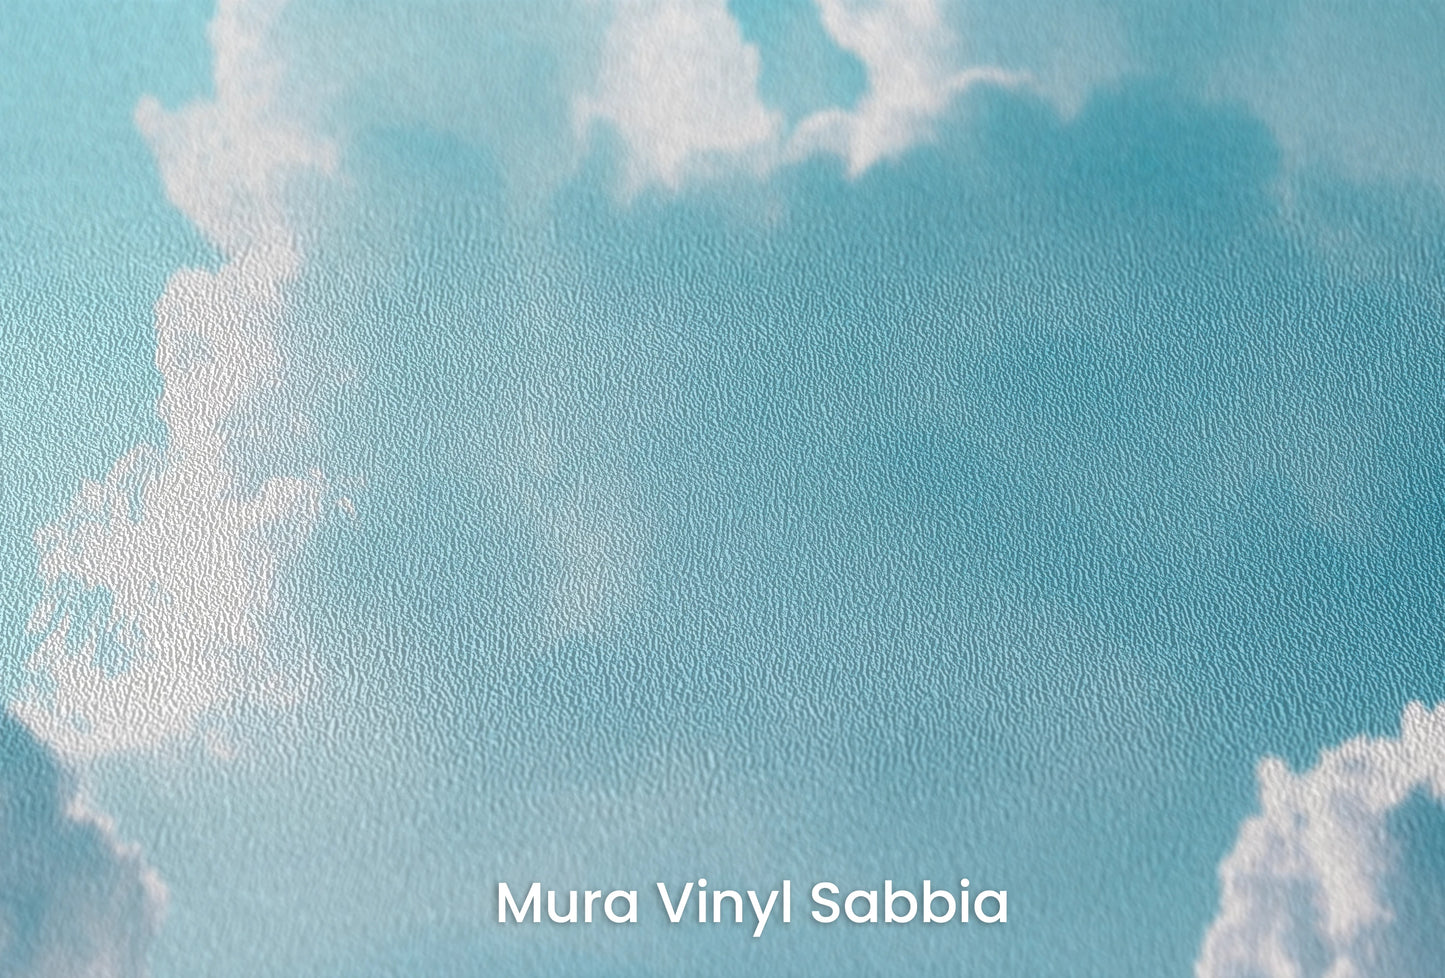 Zbliżenie na artystyczną fototapetę o nazwie Azure Calm na podłożu Mura Vinyl Sabbia struktura grubego ziarna piasku.